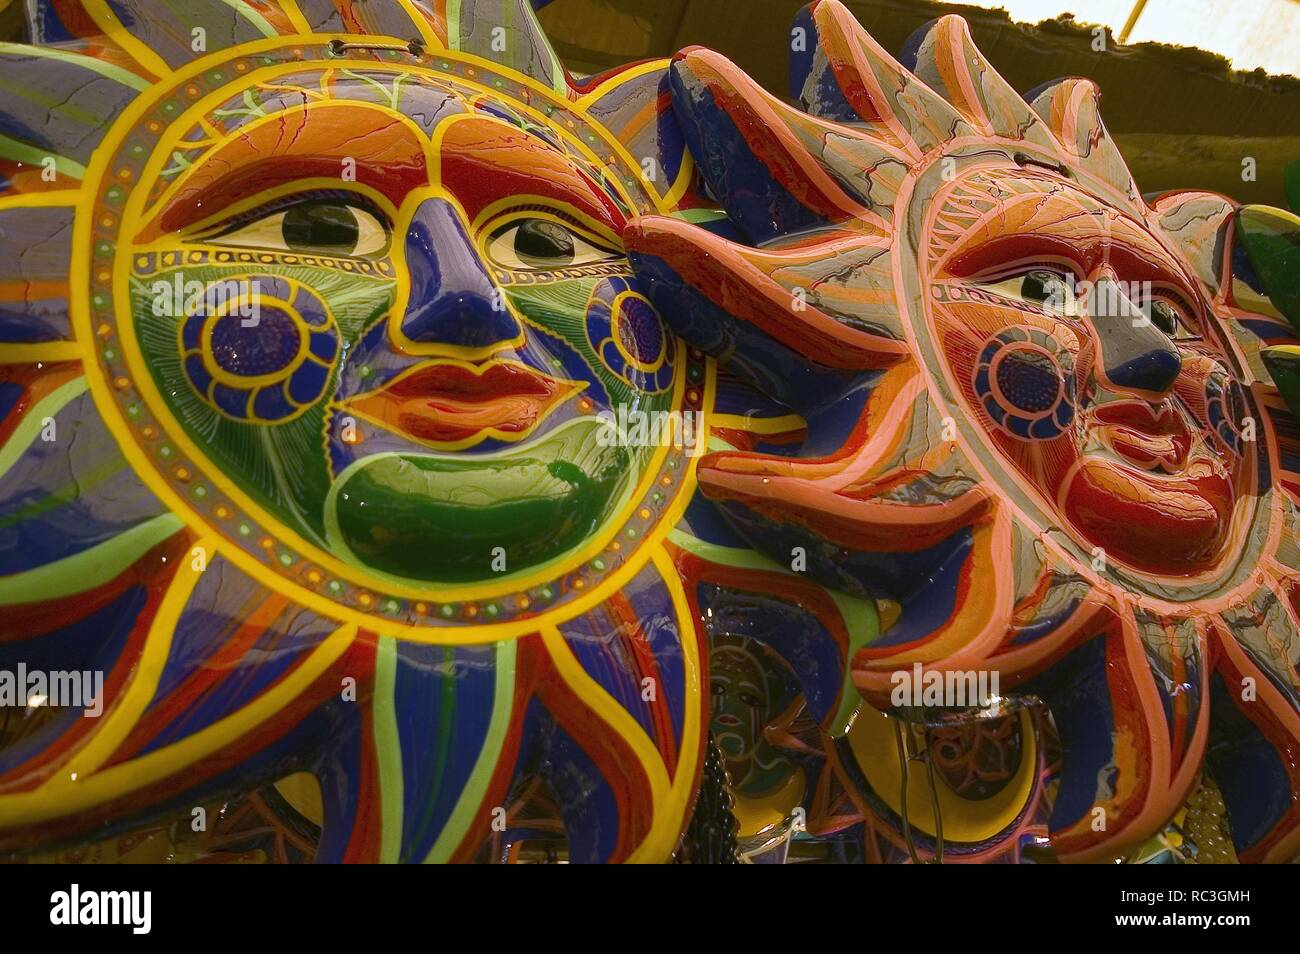 Soles de ceramica pintada. Mercado de Cuernavaca. Estado de Morelos.Mexico. Stock Photo